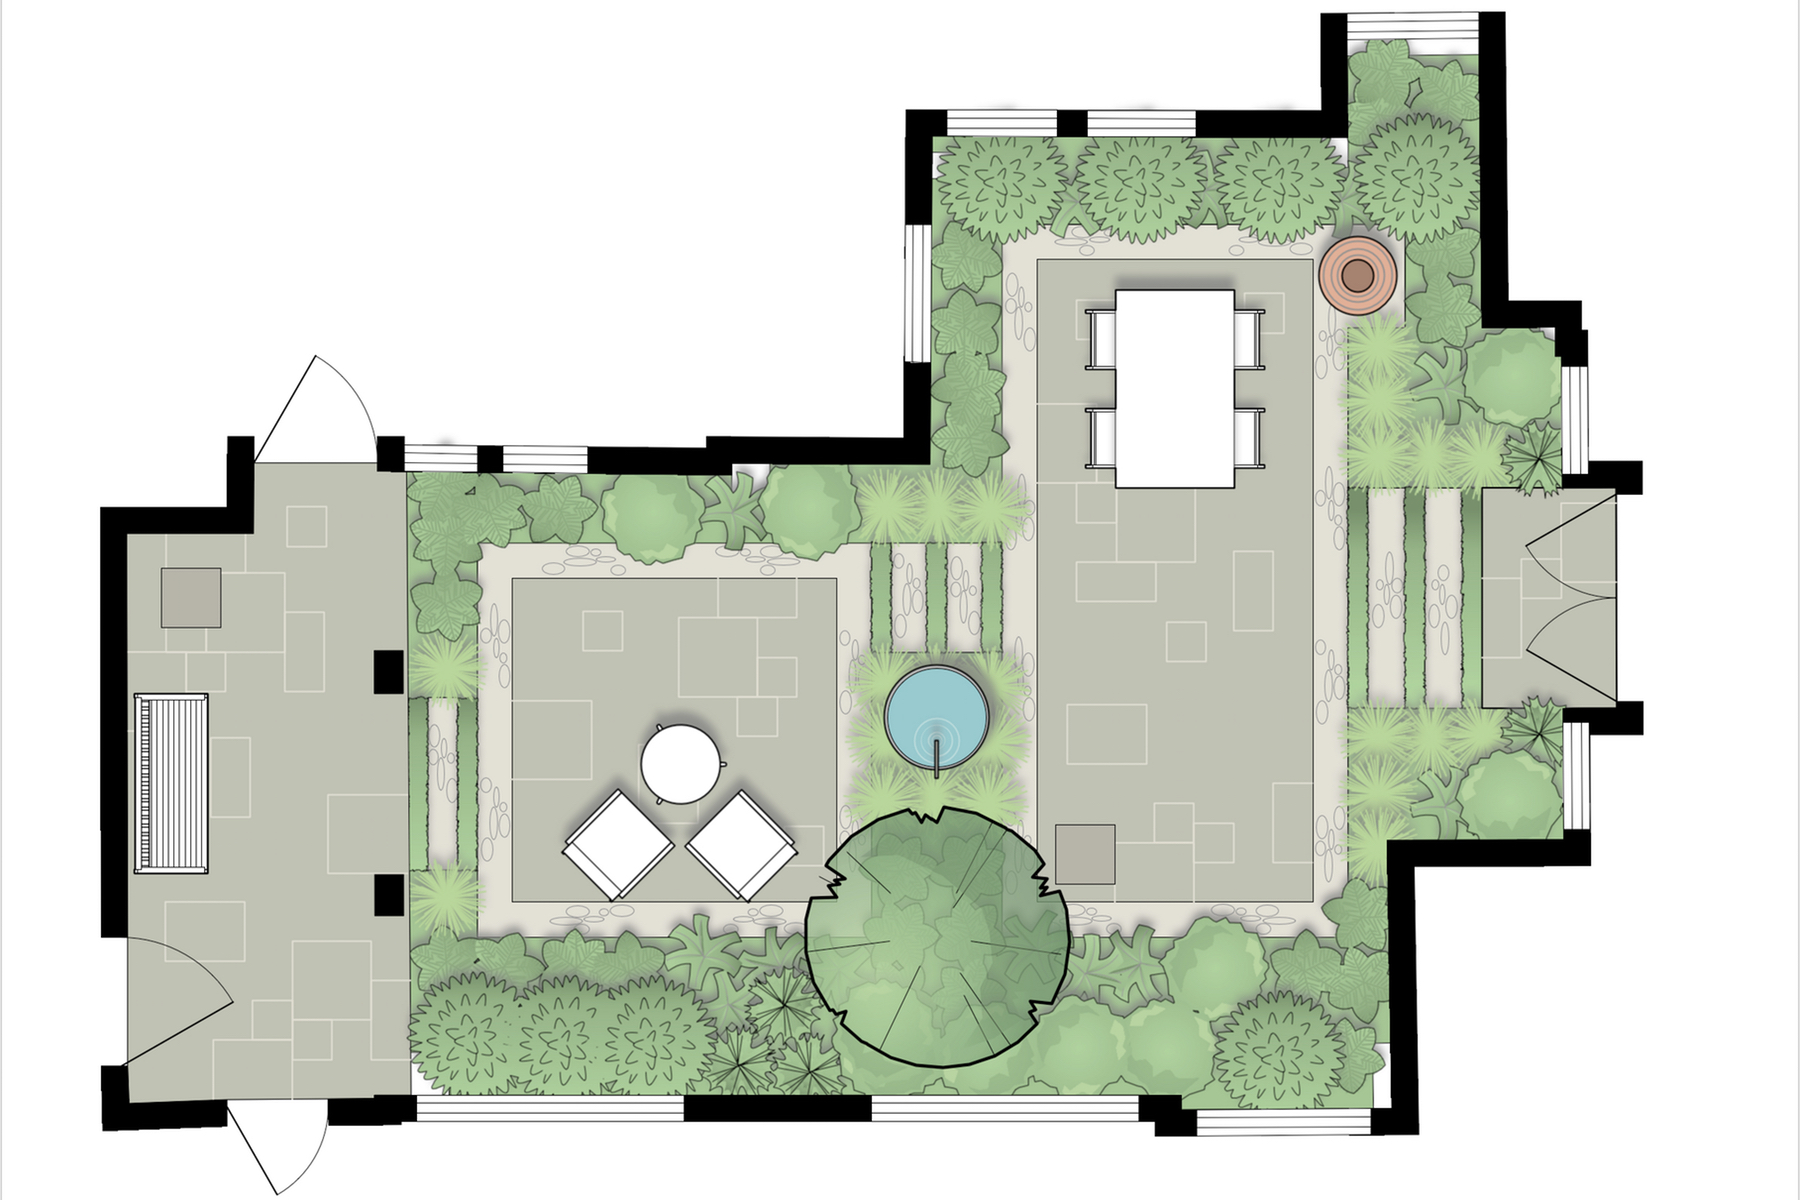 Courtyard Garden Design Masterplan